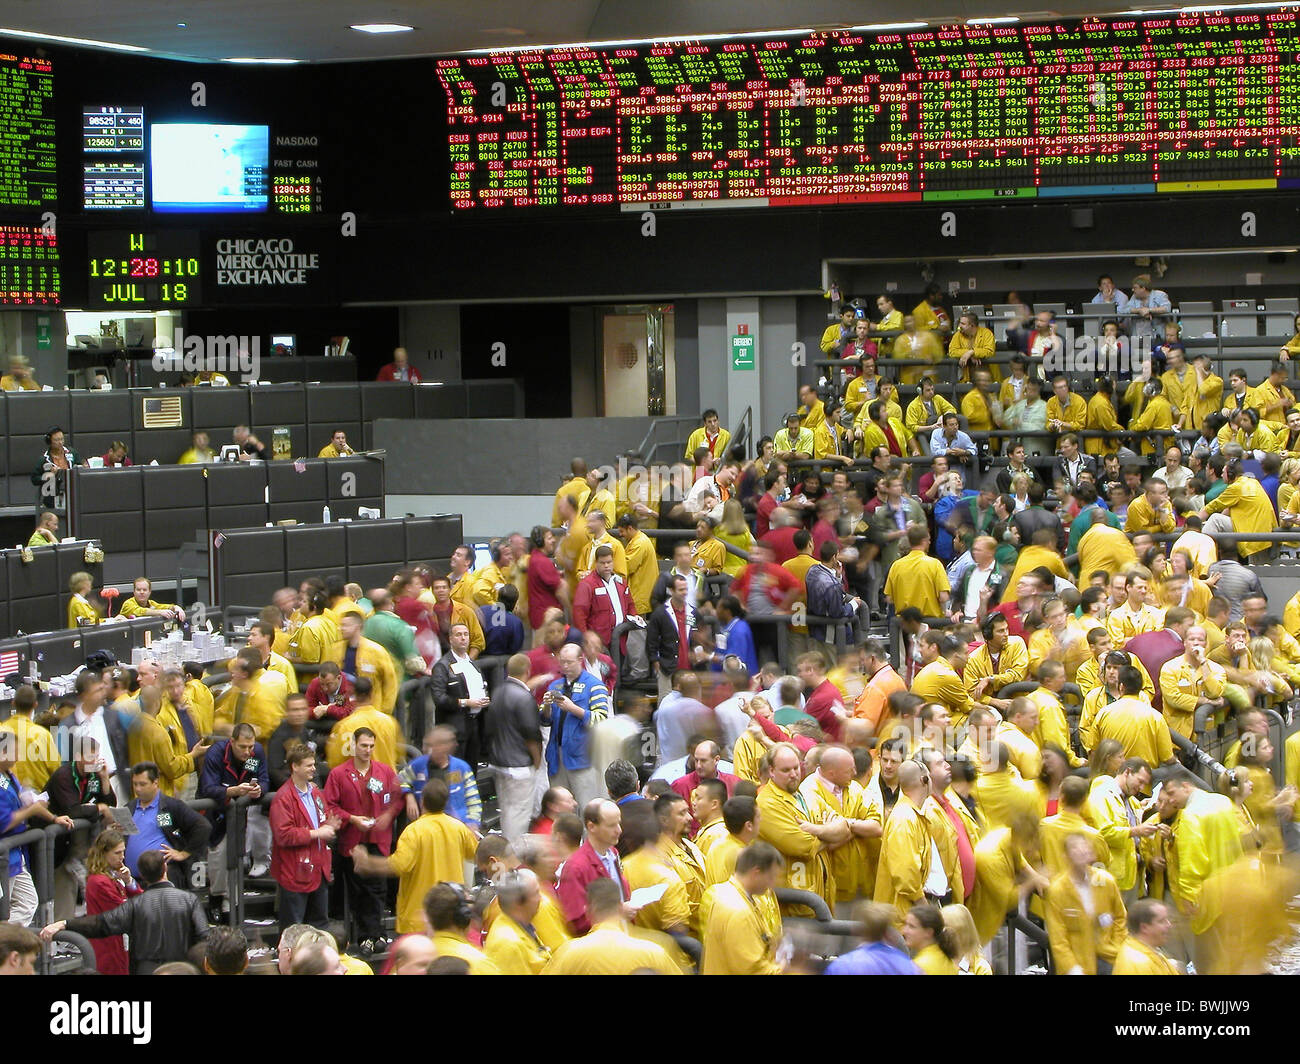 Börse im inneren Menschen Makler zeigt Handel Gewerbe Trading Floor Chicago Mercantile Exchange Chicag Stockfoto